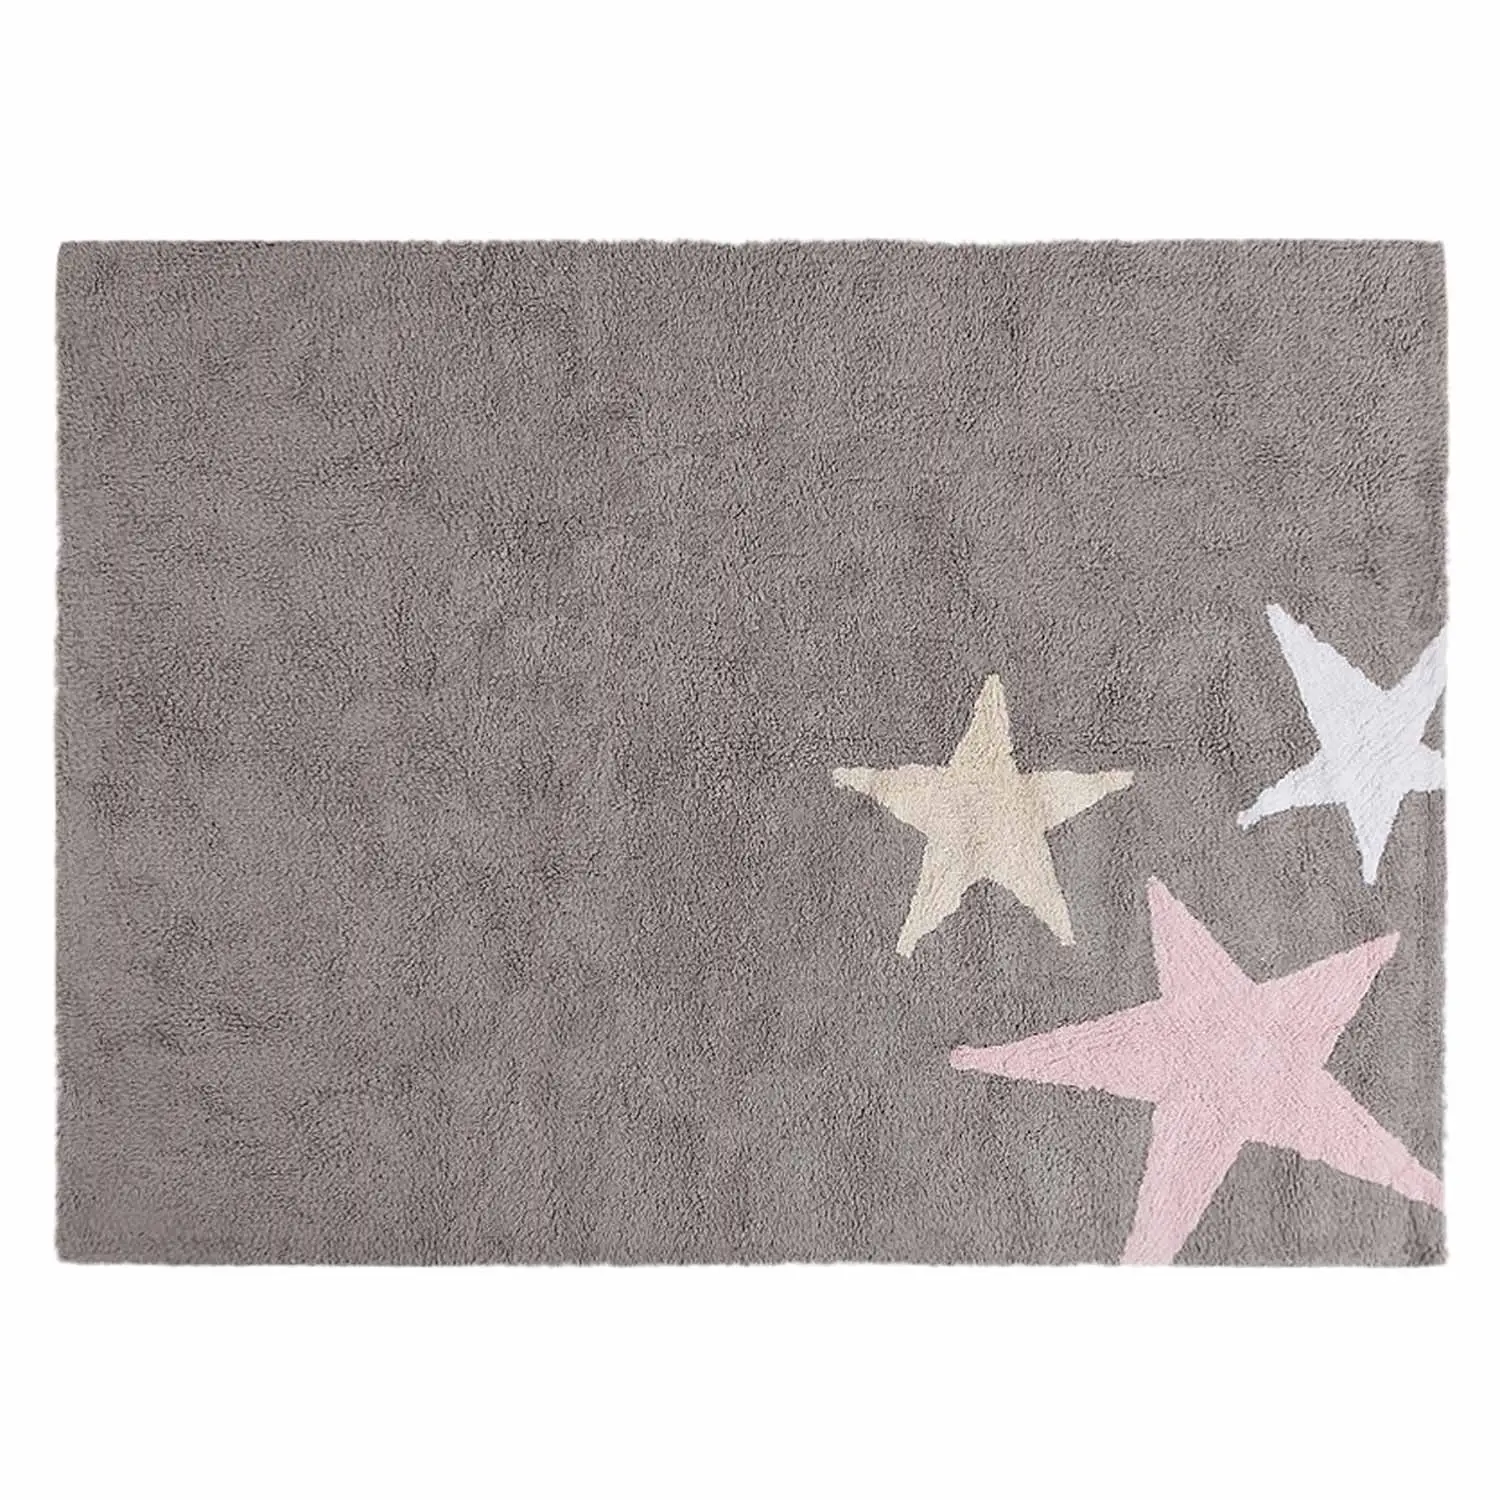 Teppich mit 3 Sternen grau-rosa | Kinderteppiche